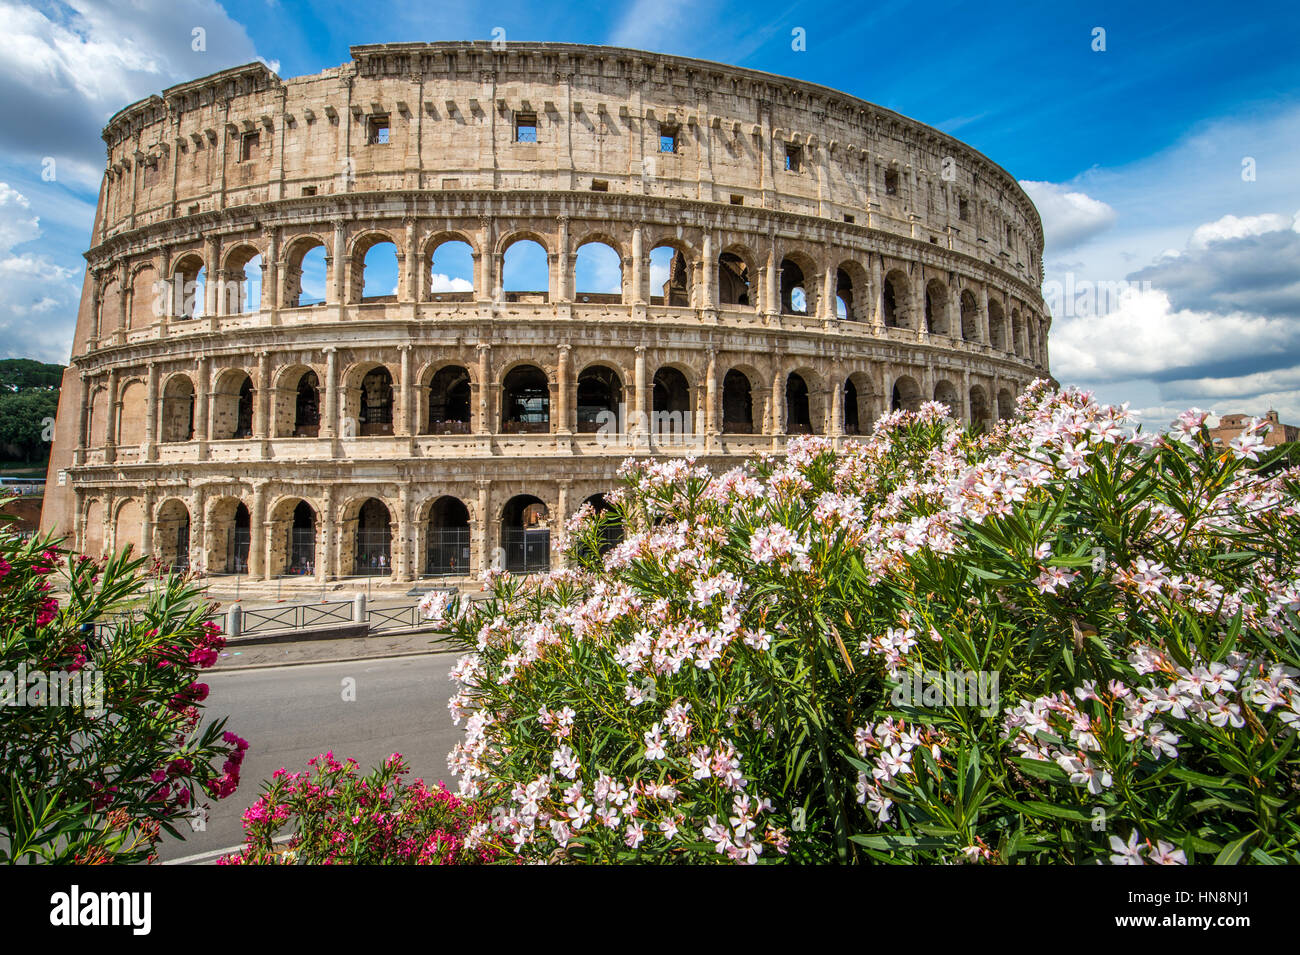 Rome, Italie- sur le célèbre amphithéâtre de pierre connue sous le nom de Colisée romain situé à l'Est du Forum Romain. Officiellement connu sous le nom de l'Amphi Flaviens Banque D'Images